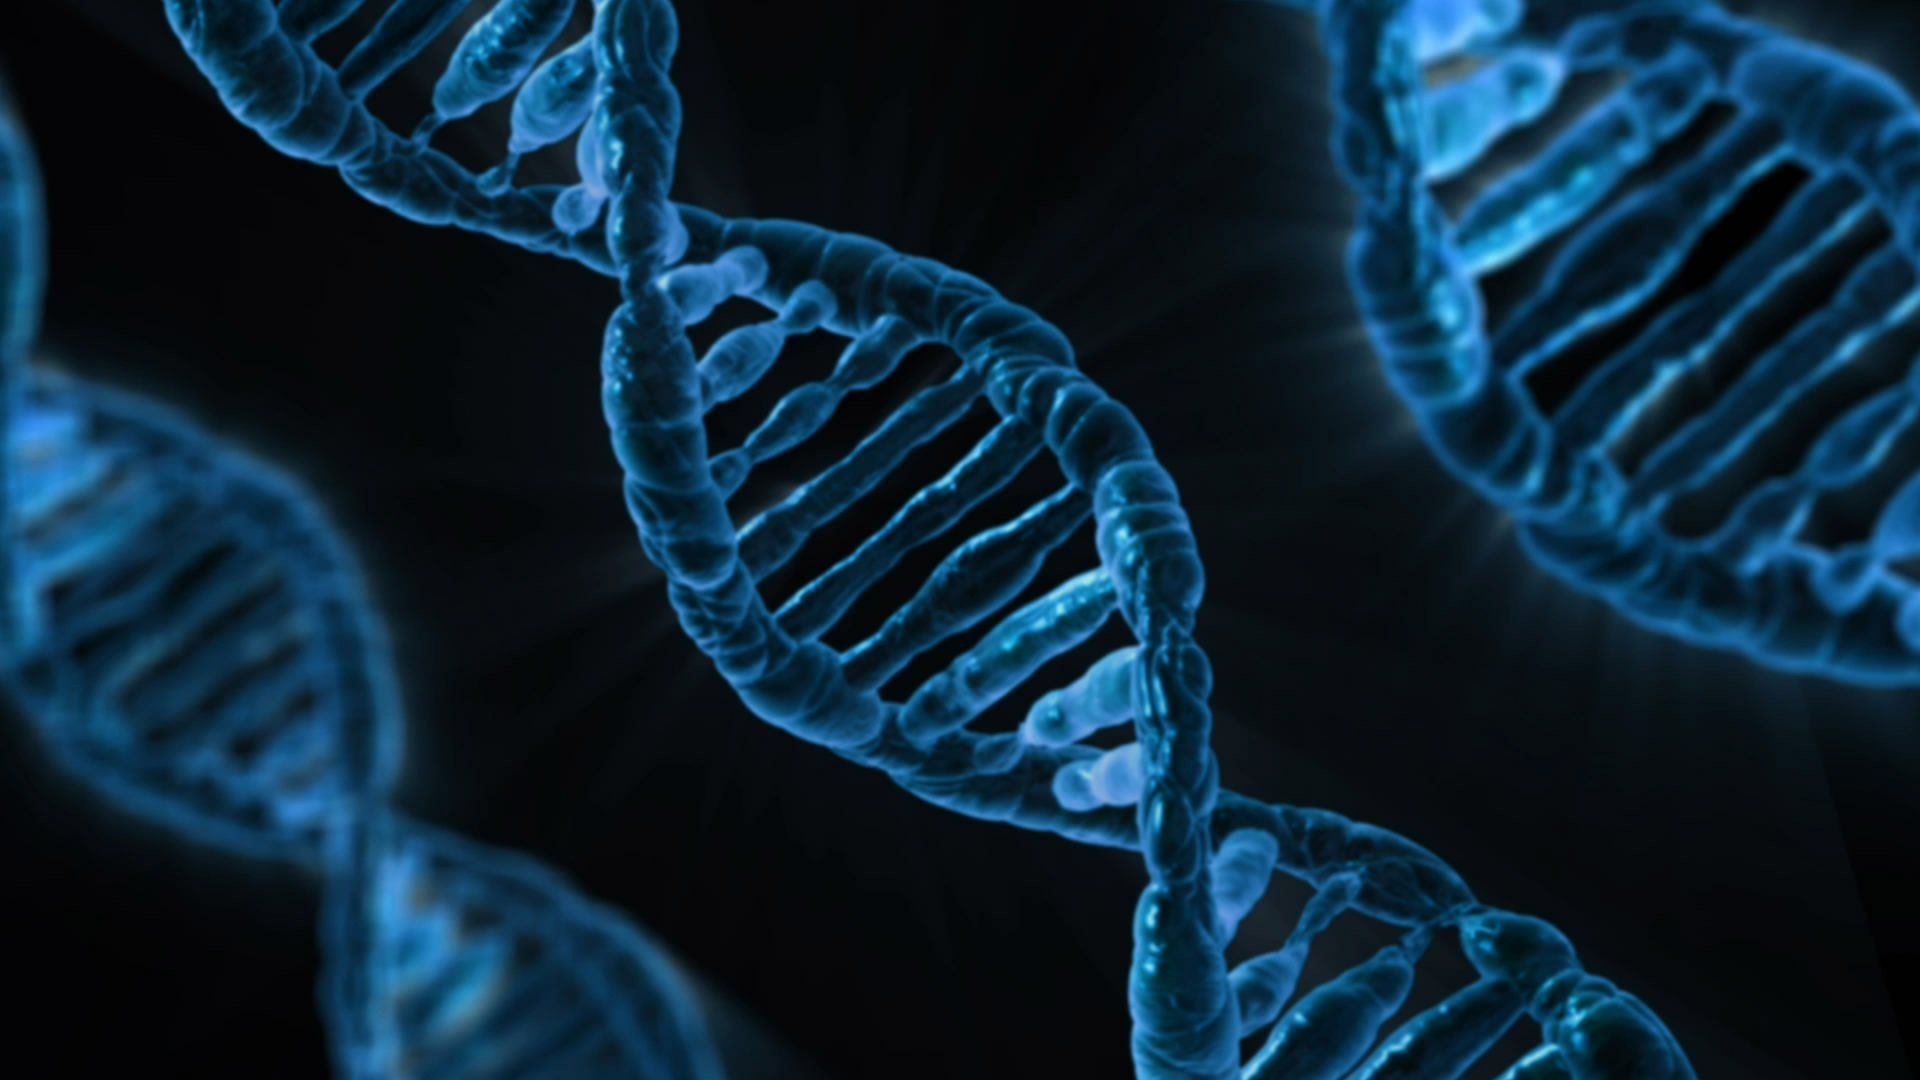 Nate in Cina due gemelle geneticamente modificate grazie al CRISPR?